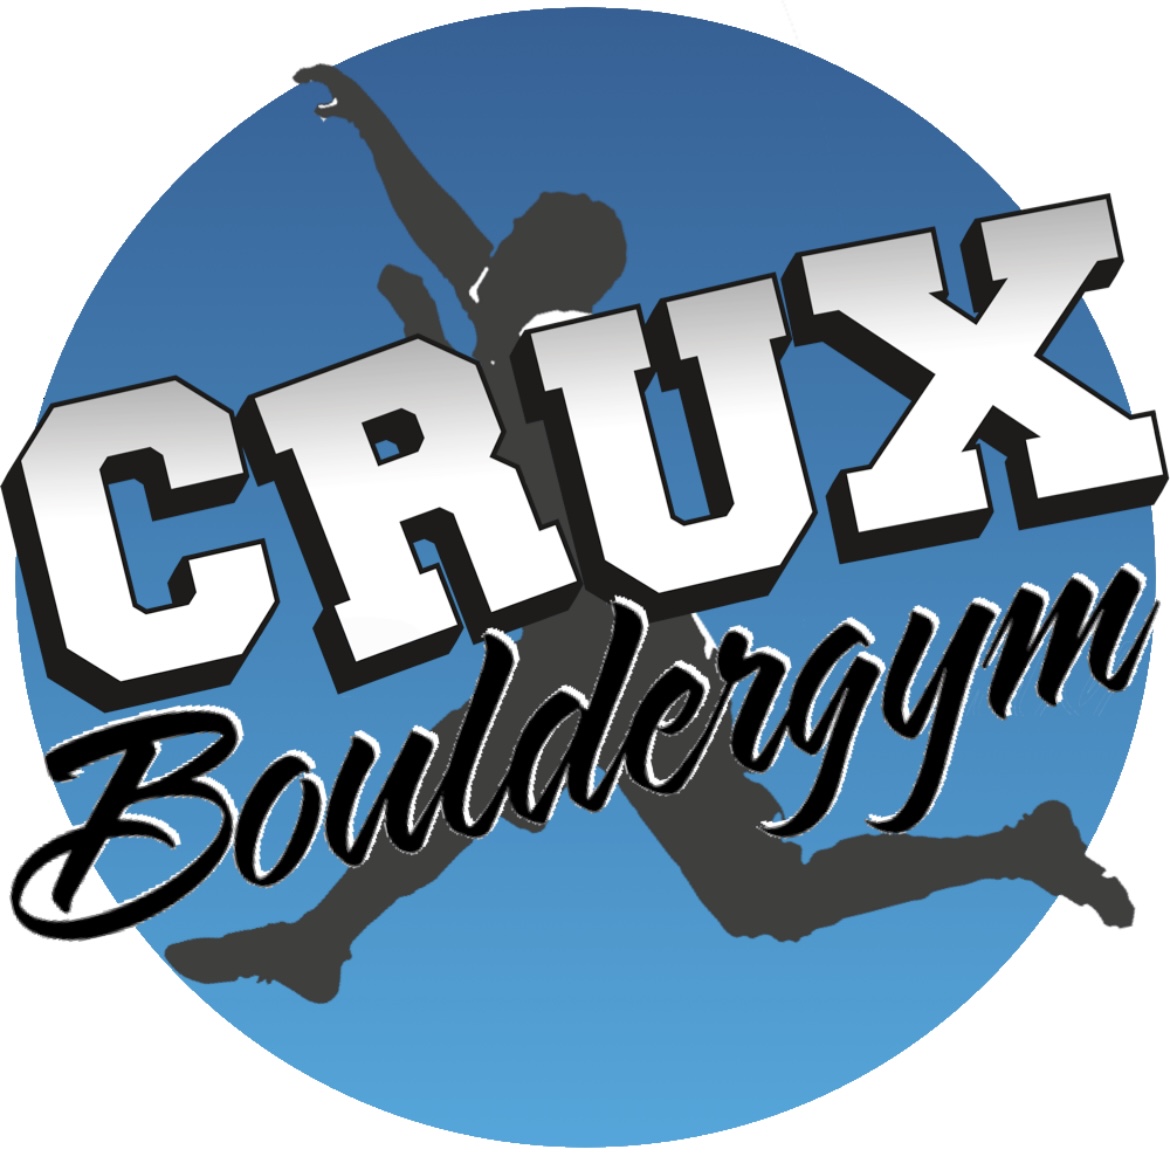 Crux Bouldergym